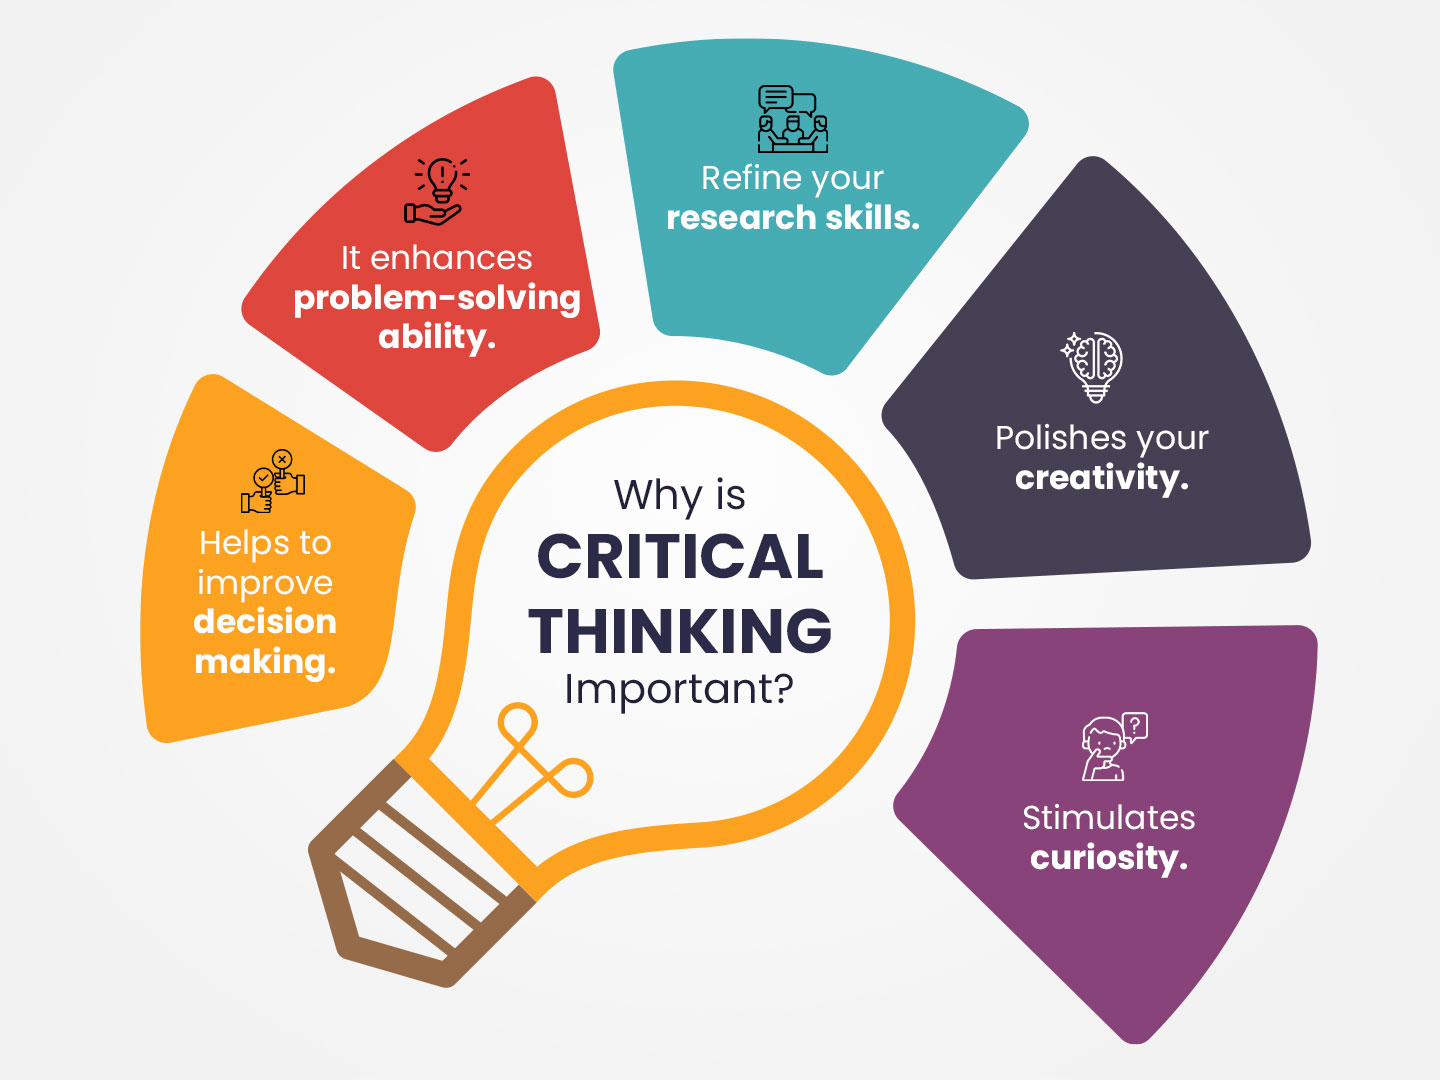 ภาพประกอบไอเดีย จัดการเรียนรู้เคมีให้นักเรียนเกิด Critical Thinking